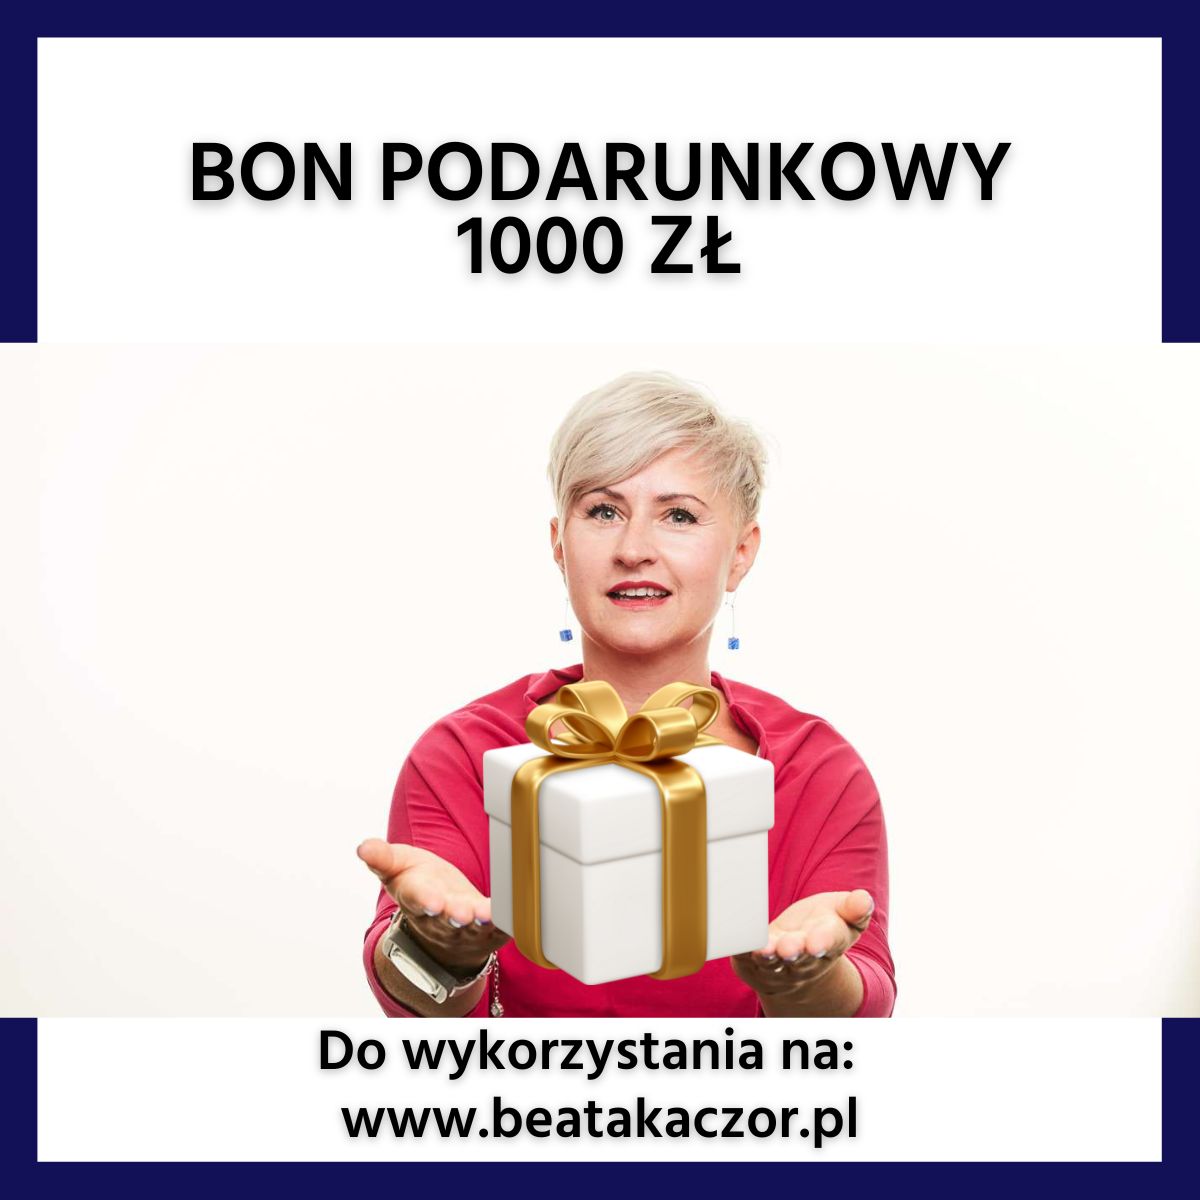 bon podarunkowy 1000 zł beatakaczor.pl